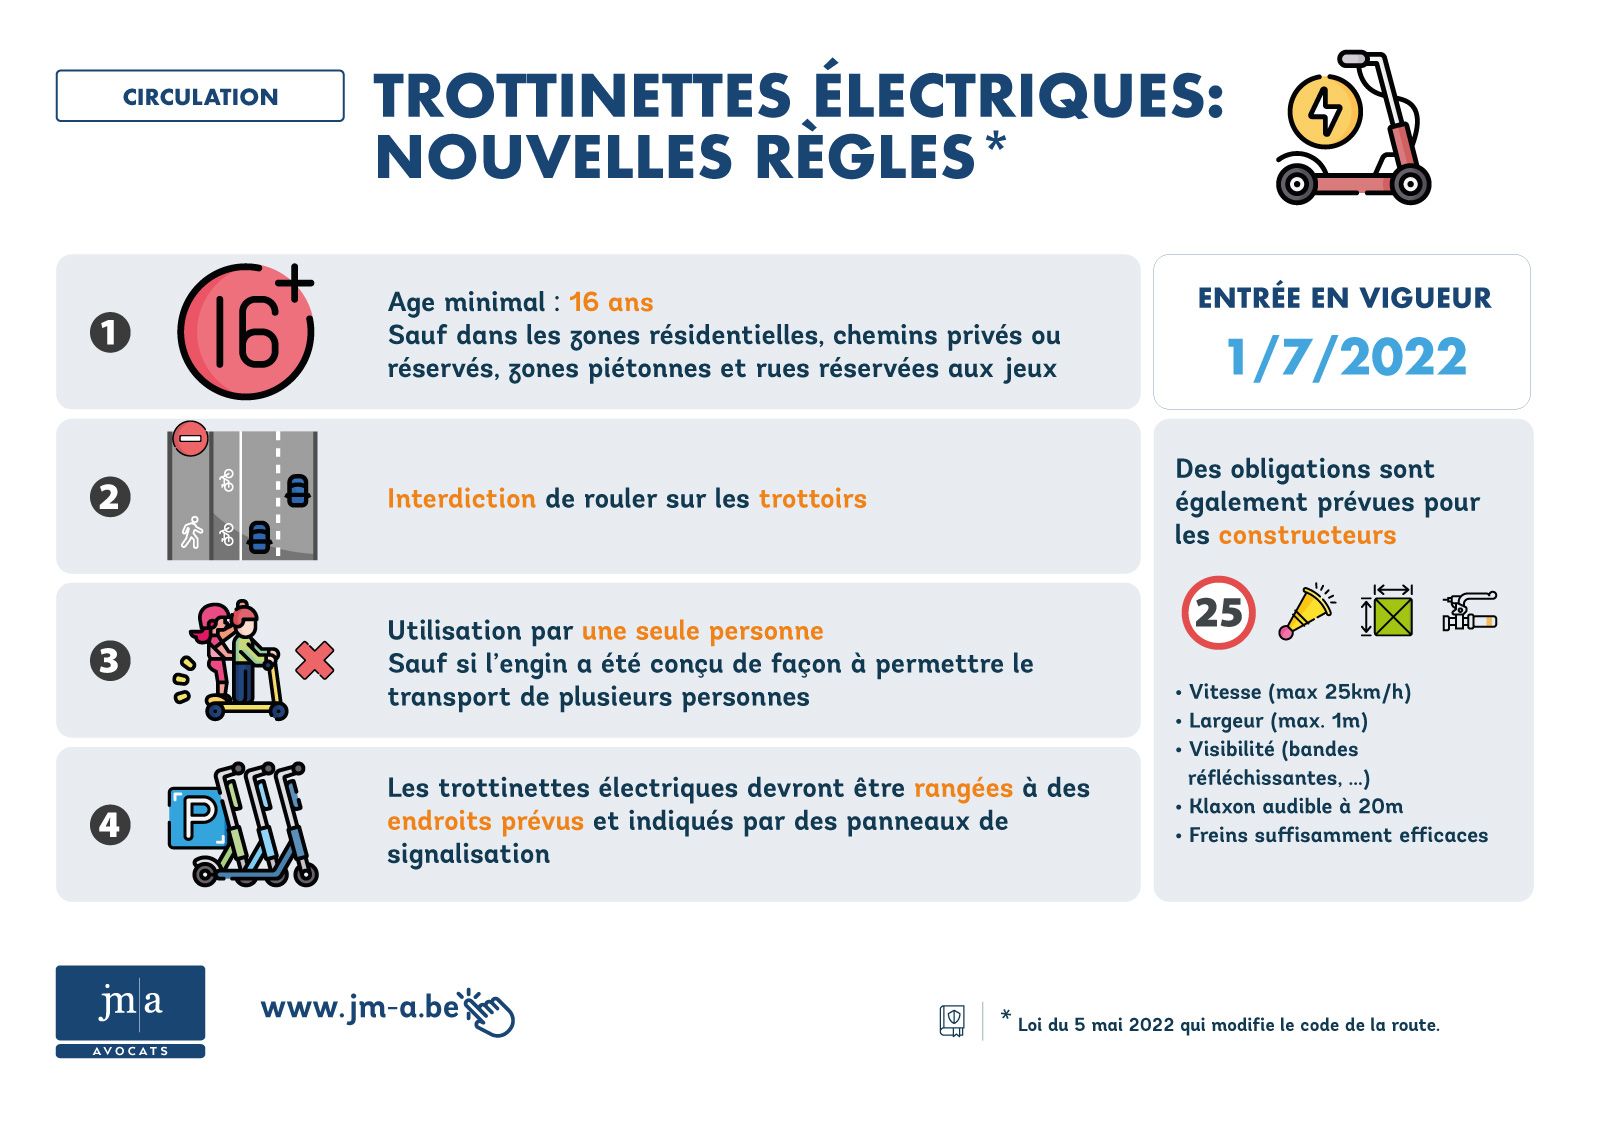 Trottinettes électriques: nouvelles règles